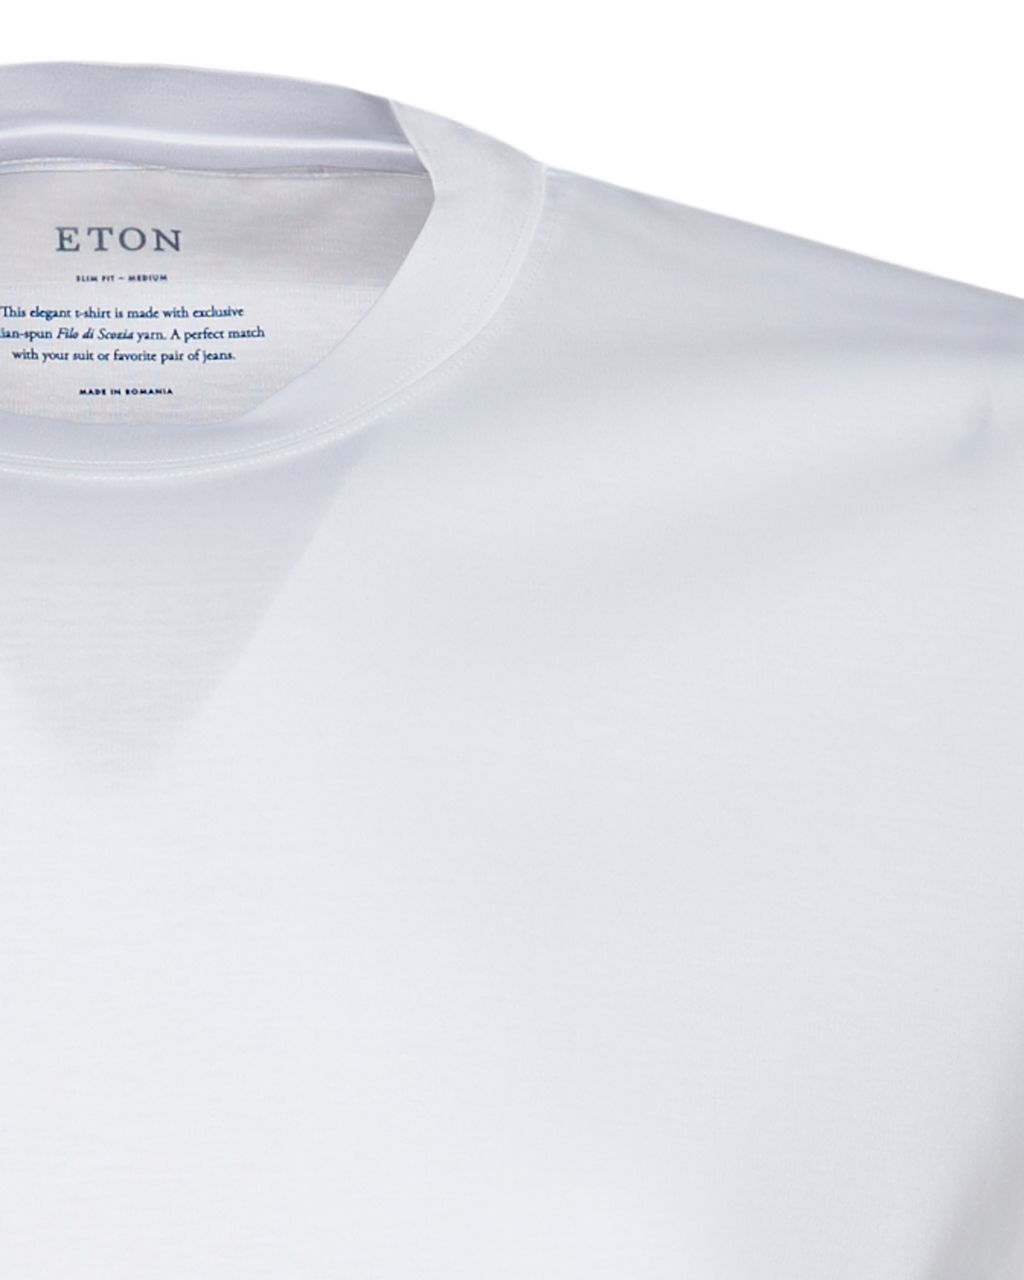 ETON T-shirt KM Wit 076978-001-5